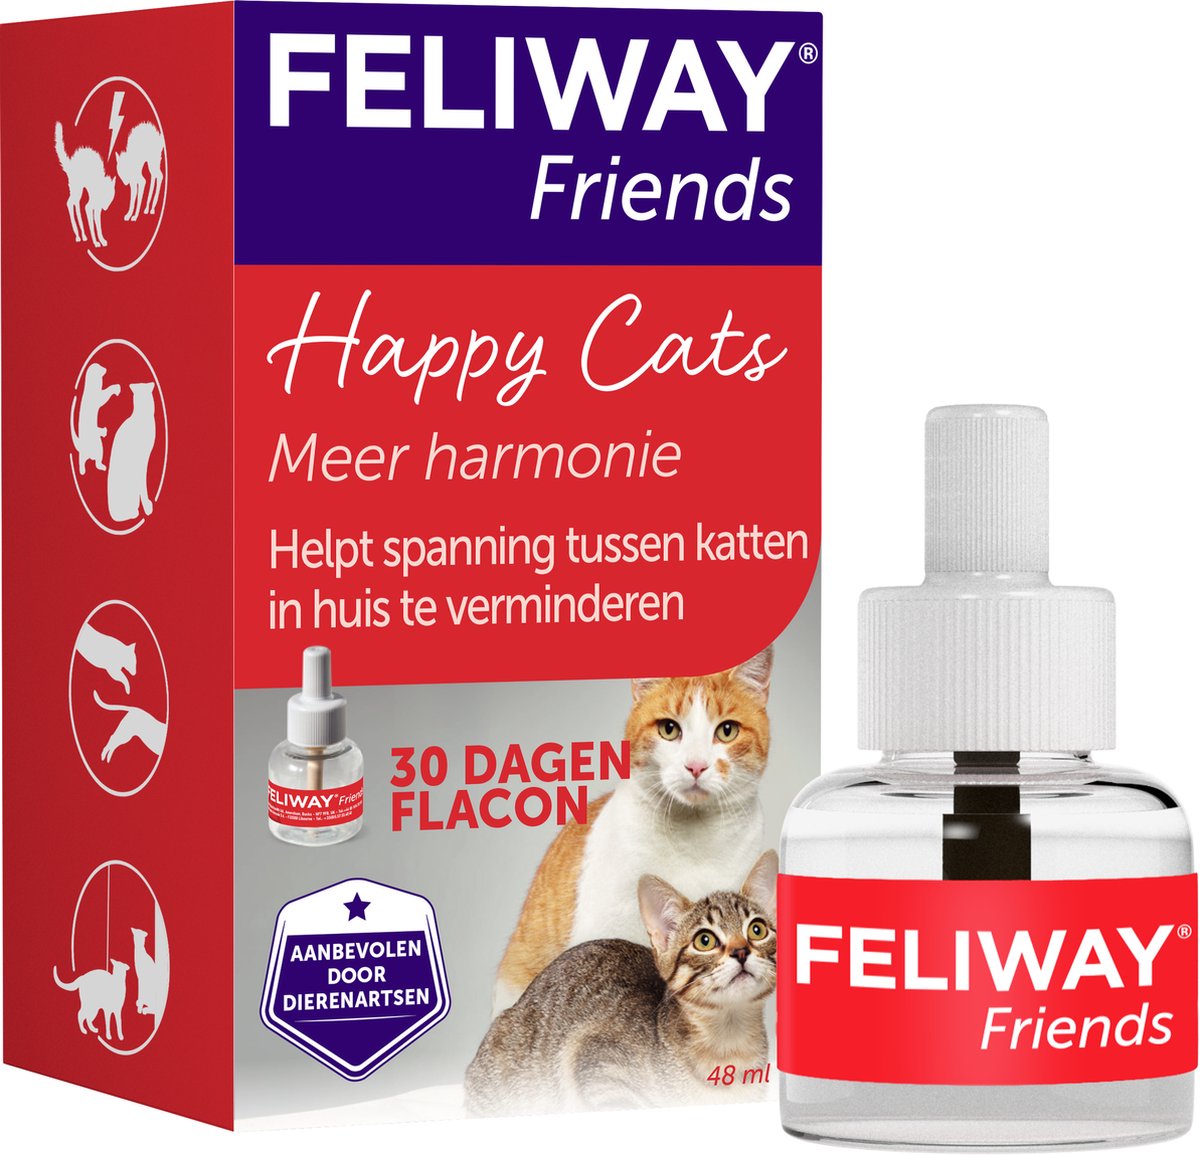 Feliway Friends - Navulling - 1 x 48 ml - Anti-conflict voor Katten - Feliway